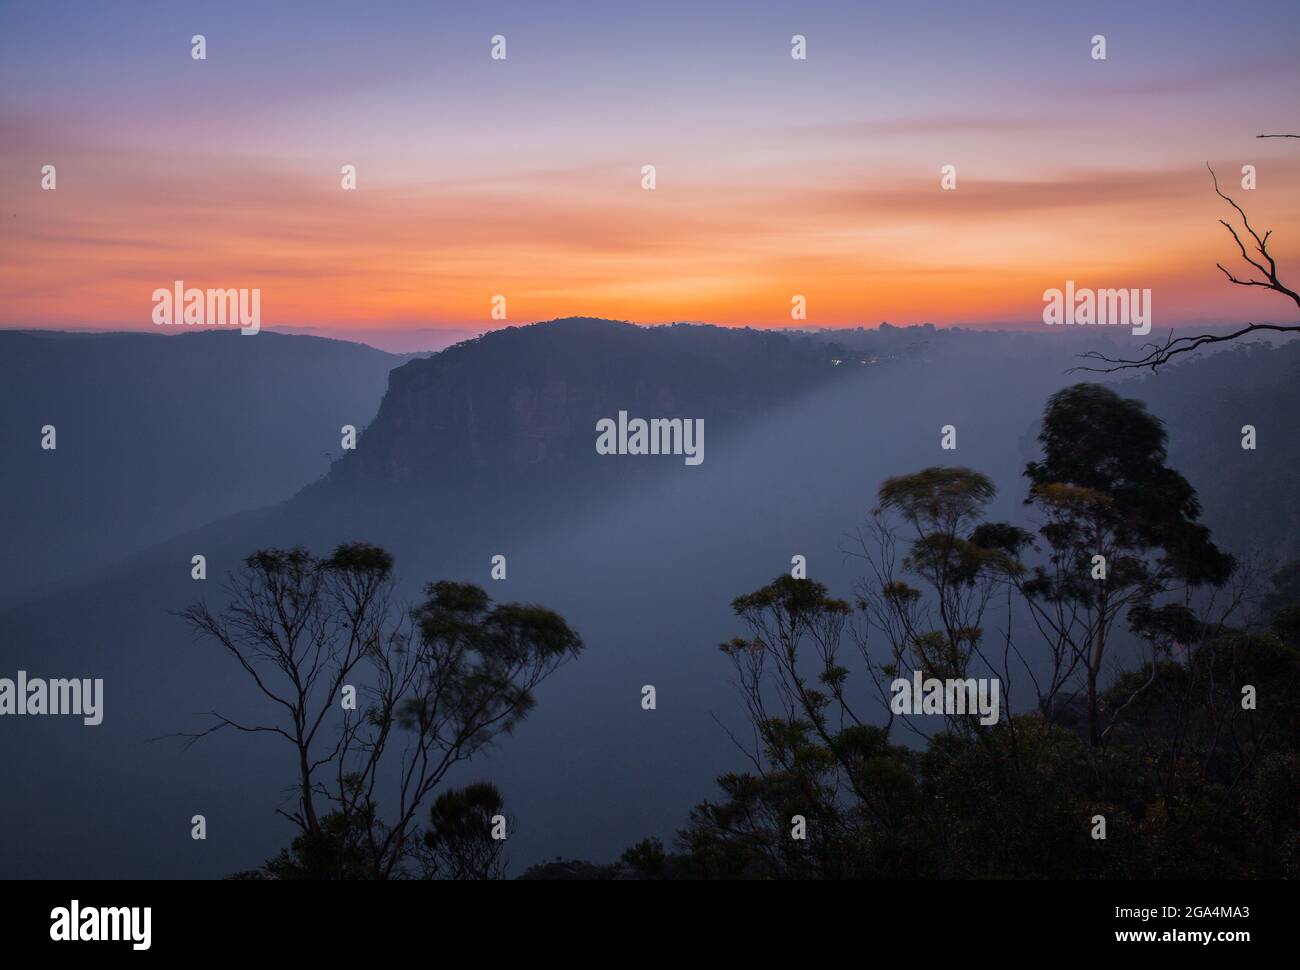 Sunset over the Jamison Valley Katoomba, Blue Mountains Australia Stock Photo